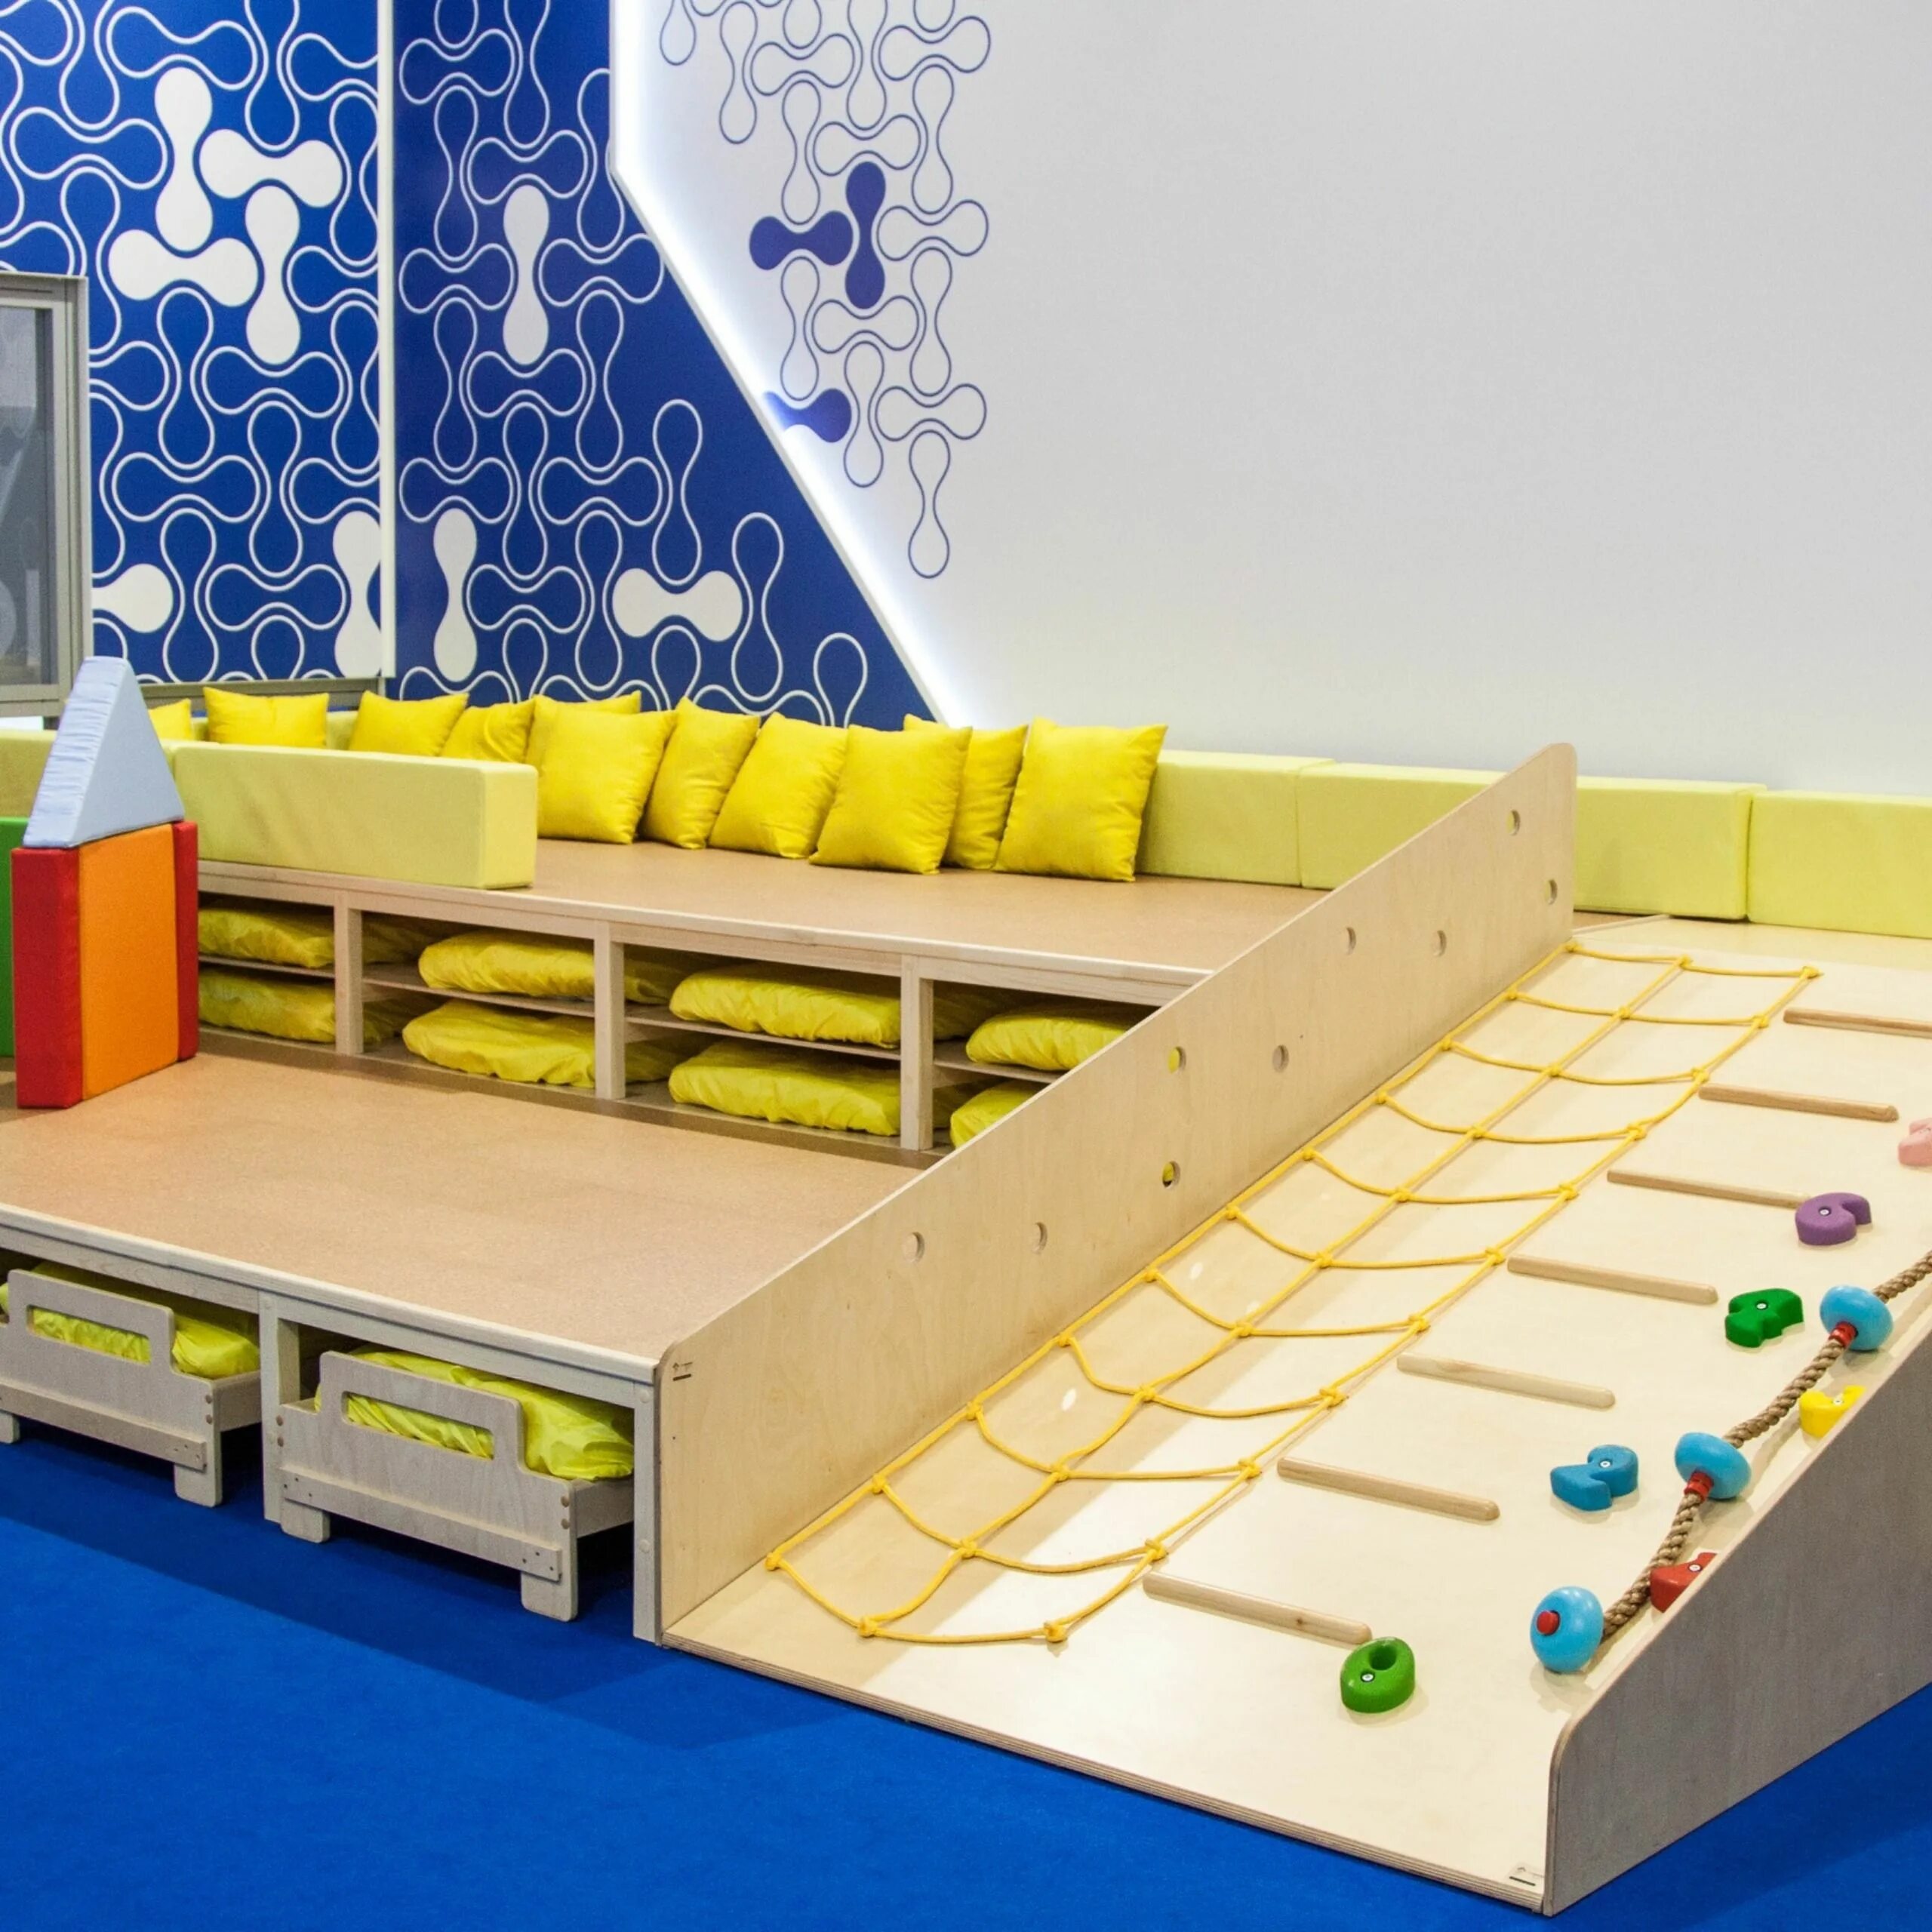 Кровати подиумы в детском саду. Современная мебель для детских садов. Трансформируемая мебель для детских садов. Многофункциональная мебель для детского сада. Подиум в саду